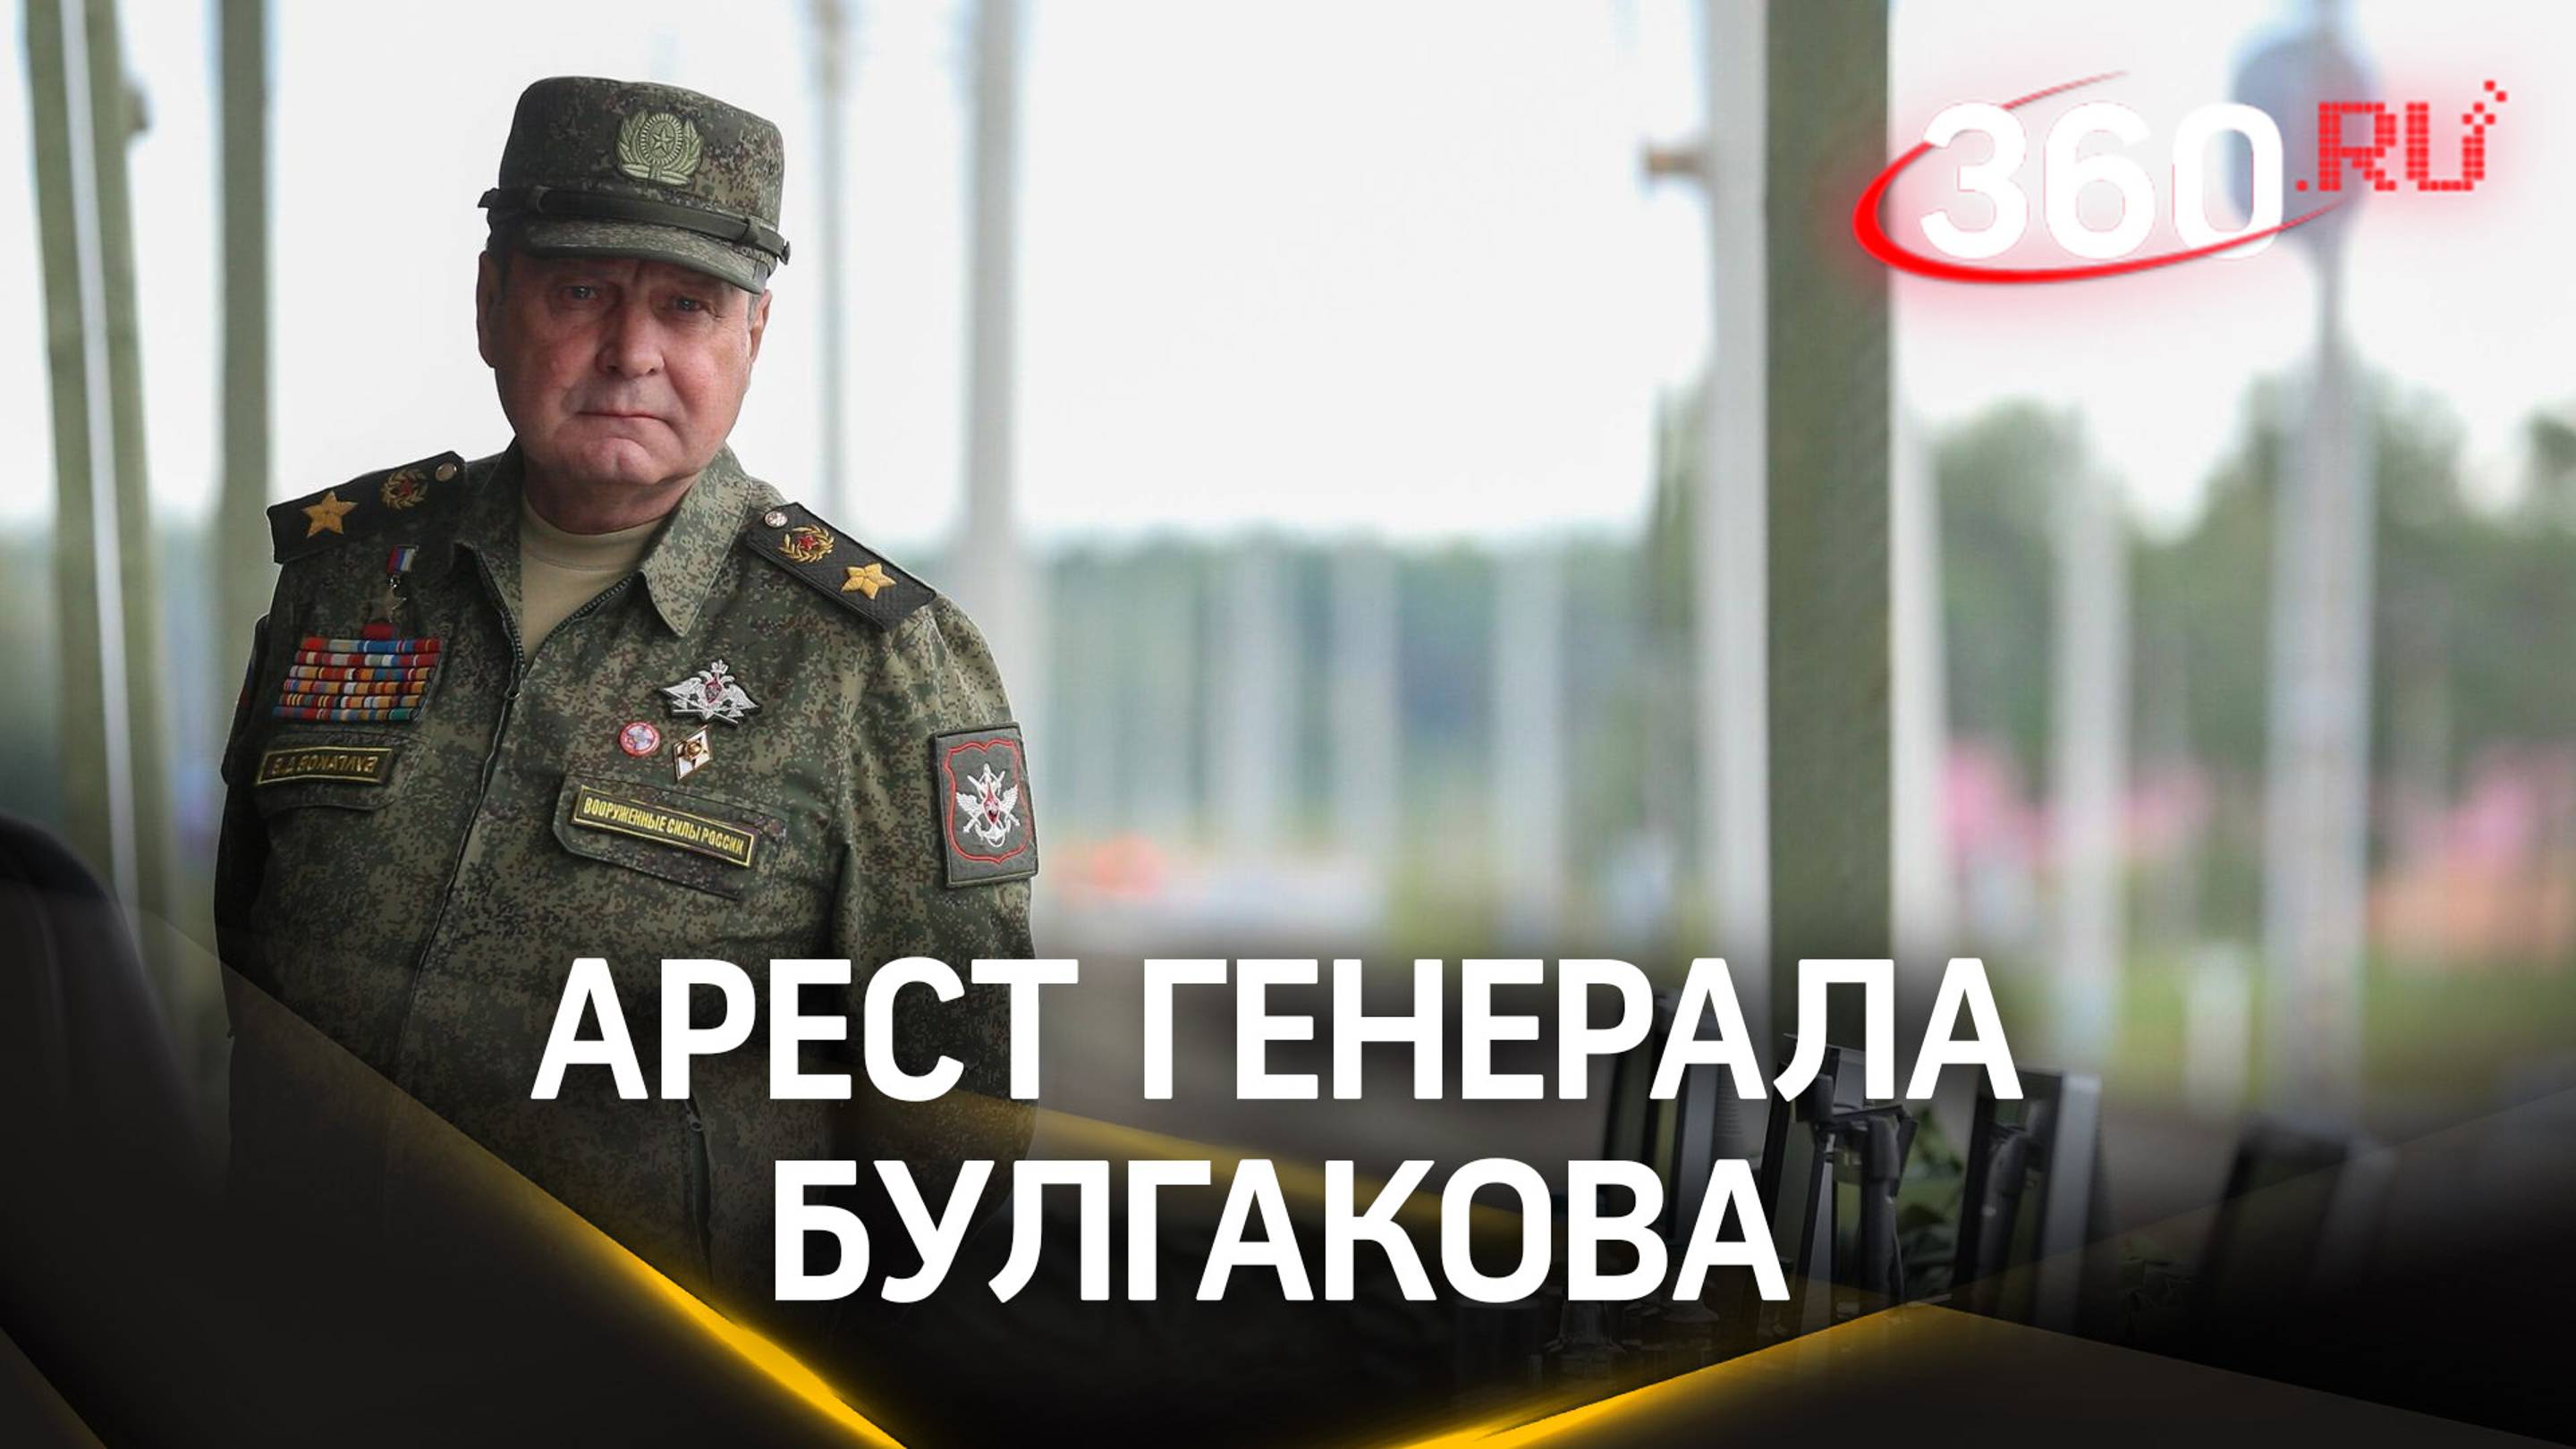 Генерал Булгаков просил не отправлять его в СИЗО, вину не признал. Детали дела о коррупции